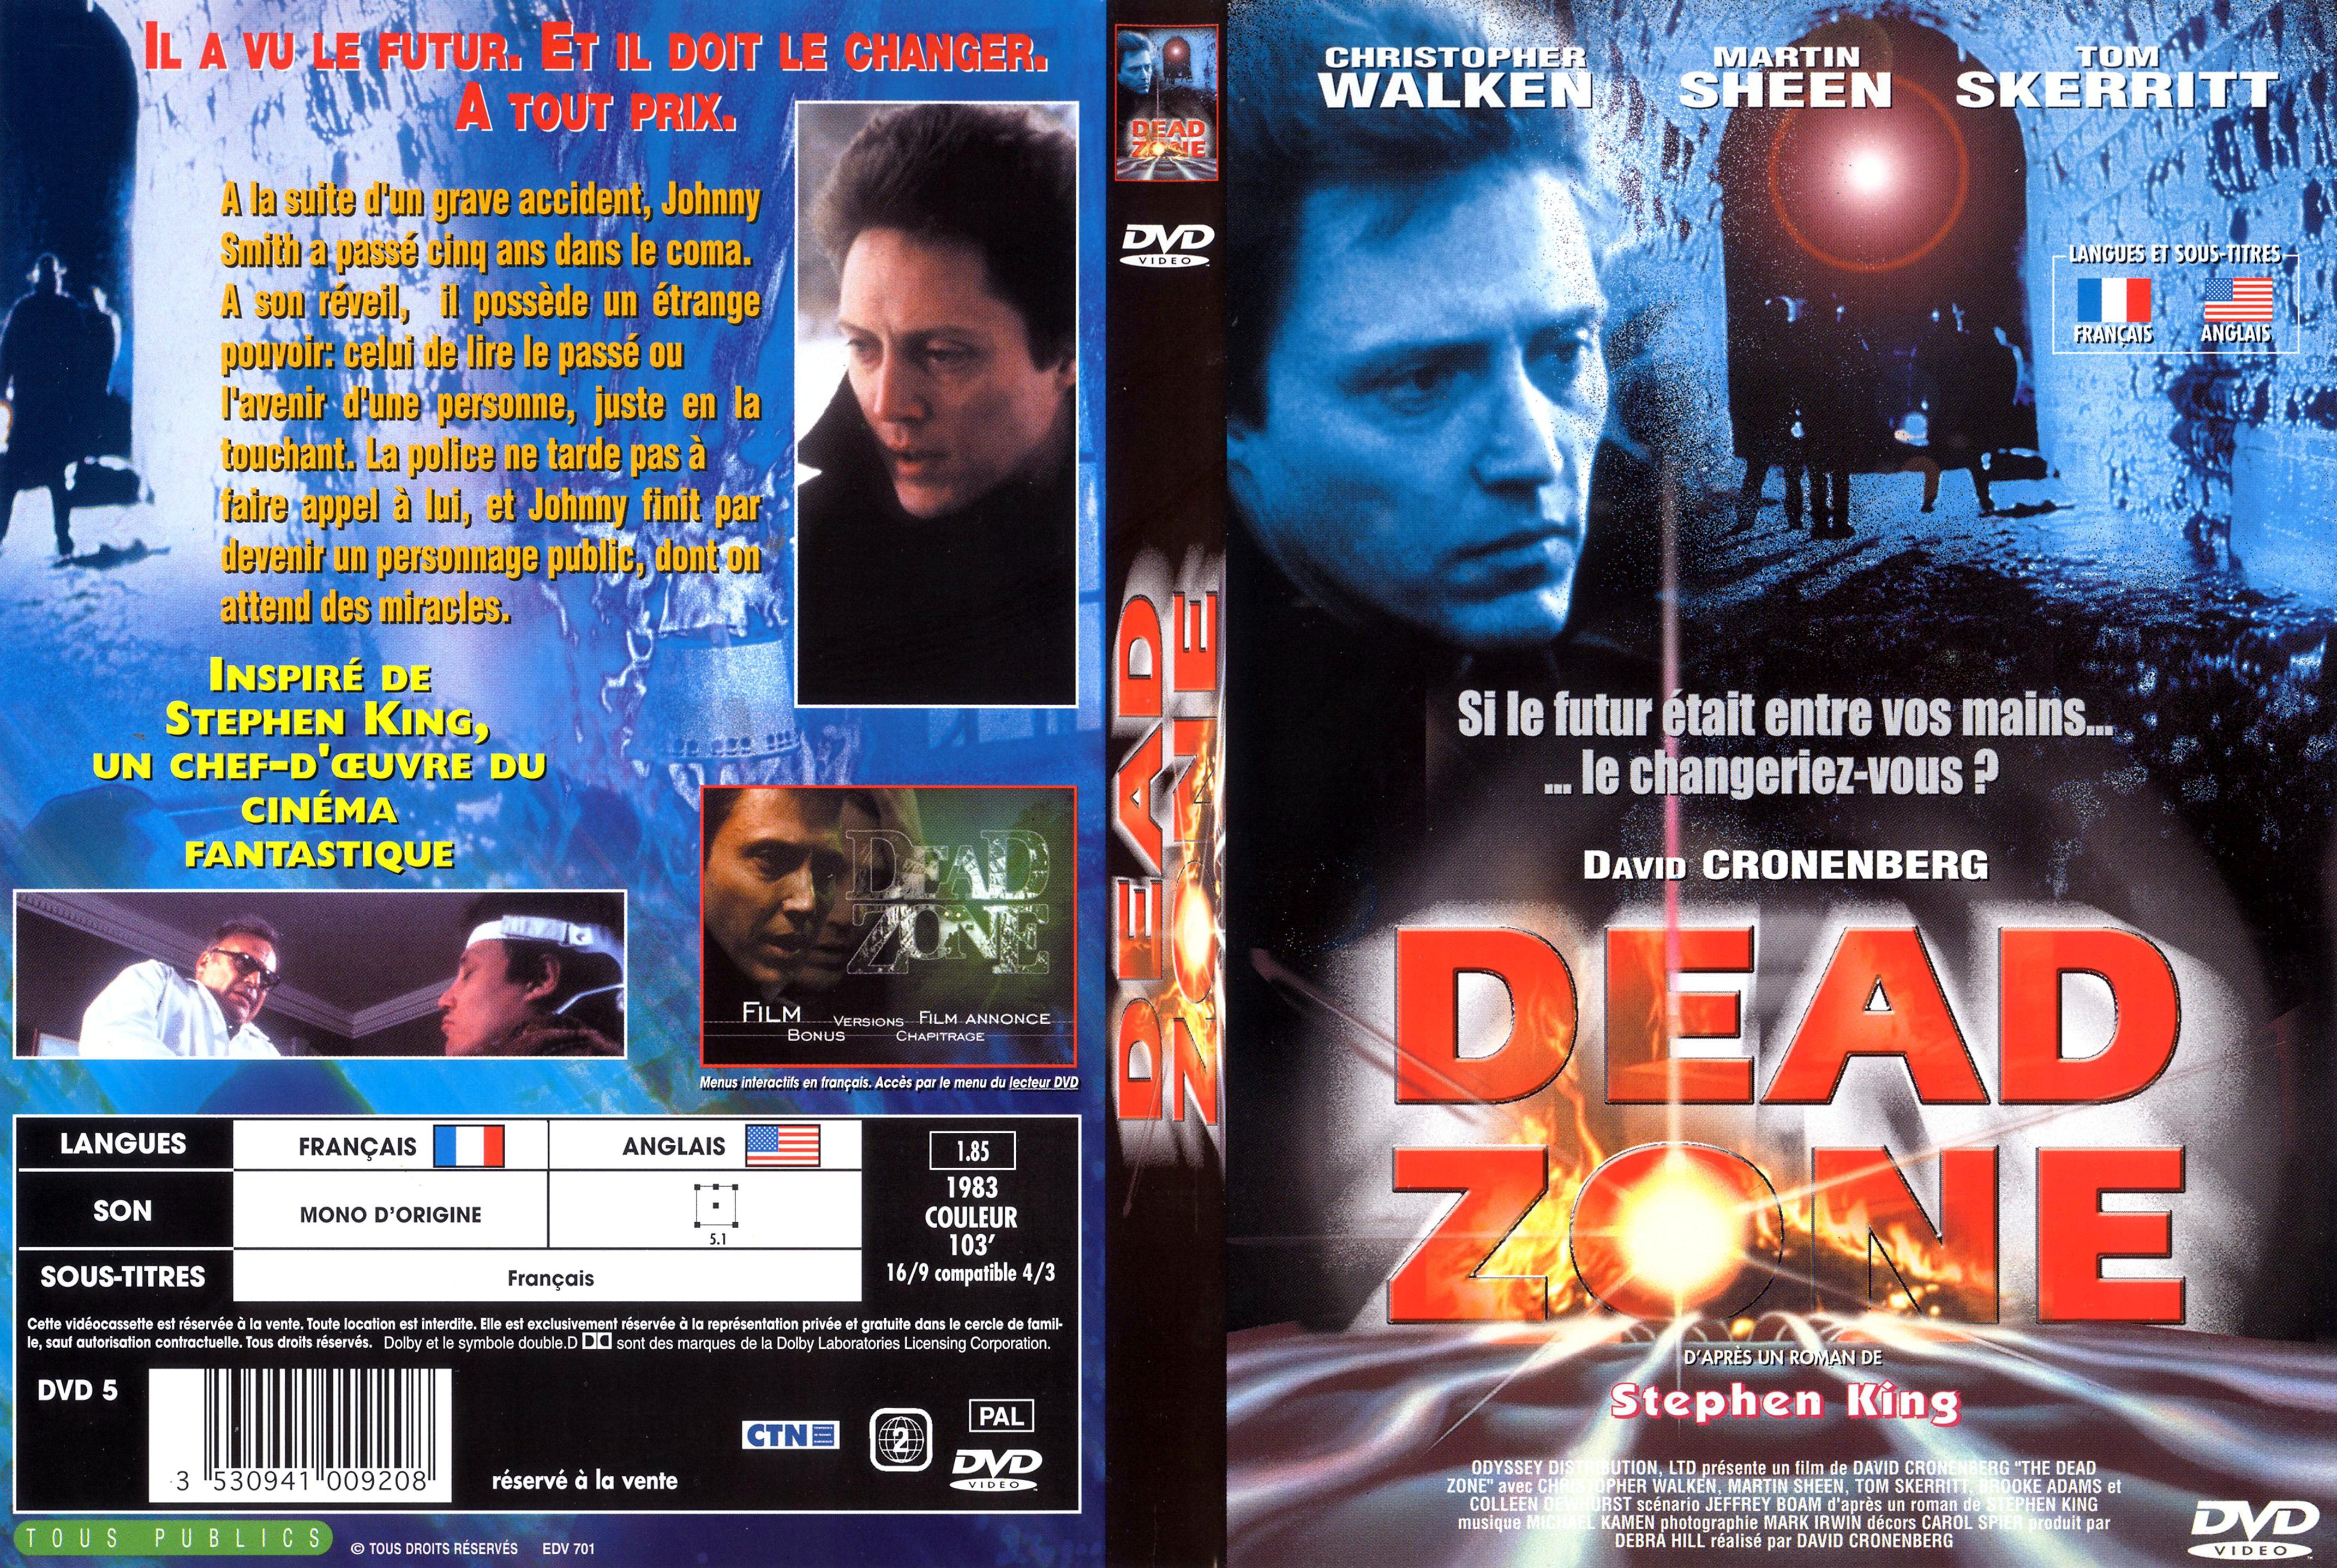 Jaquette DVD Dead zone v3